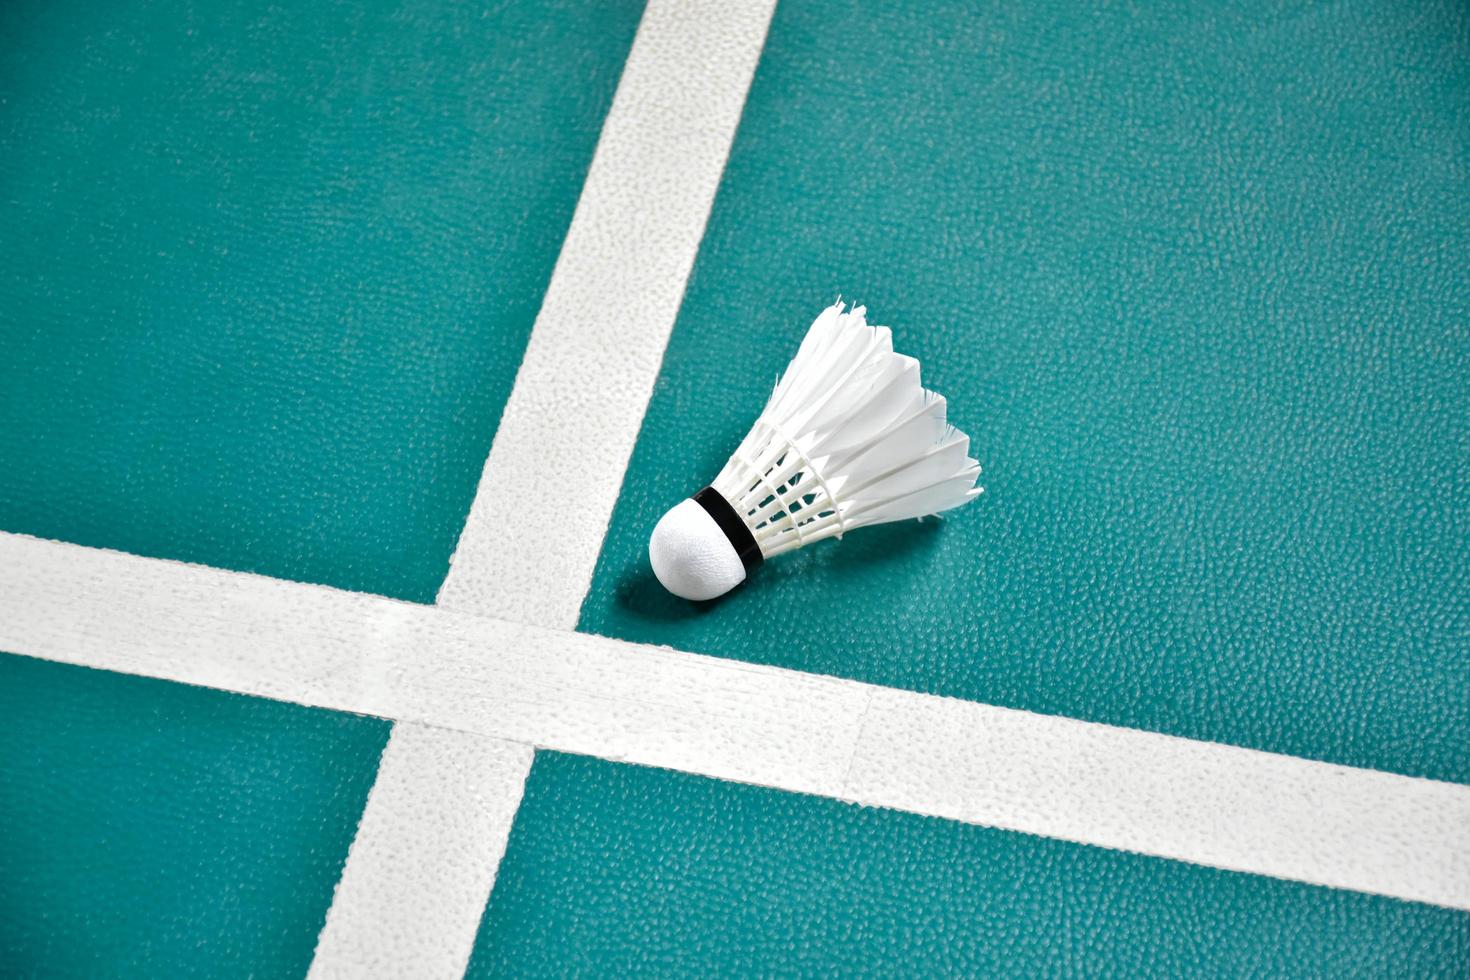 volant de badminton blanc crème sur sol vert dans un terrain de badminton intérieur, arrière-plan flou de badminton, espace de copie photo